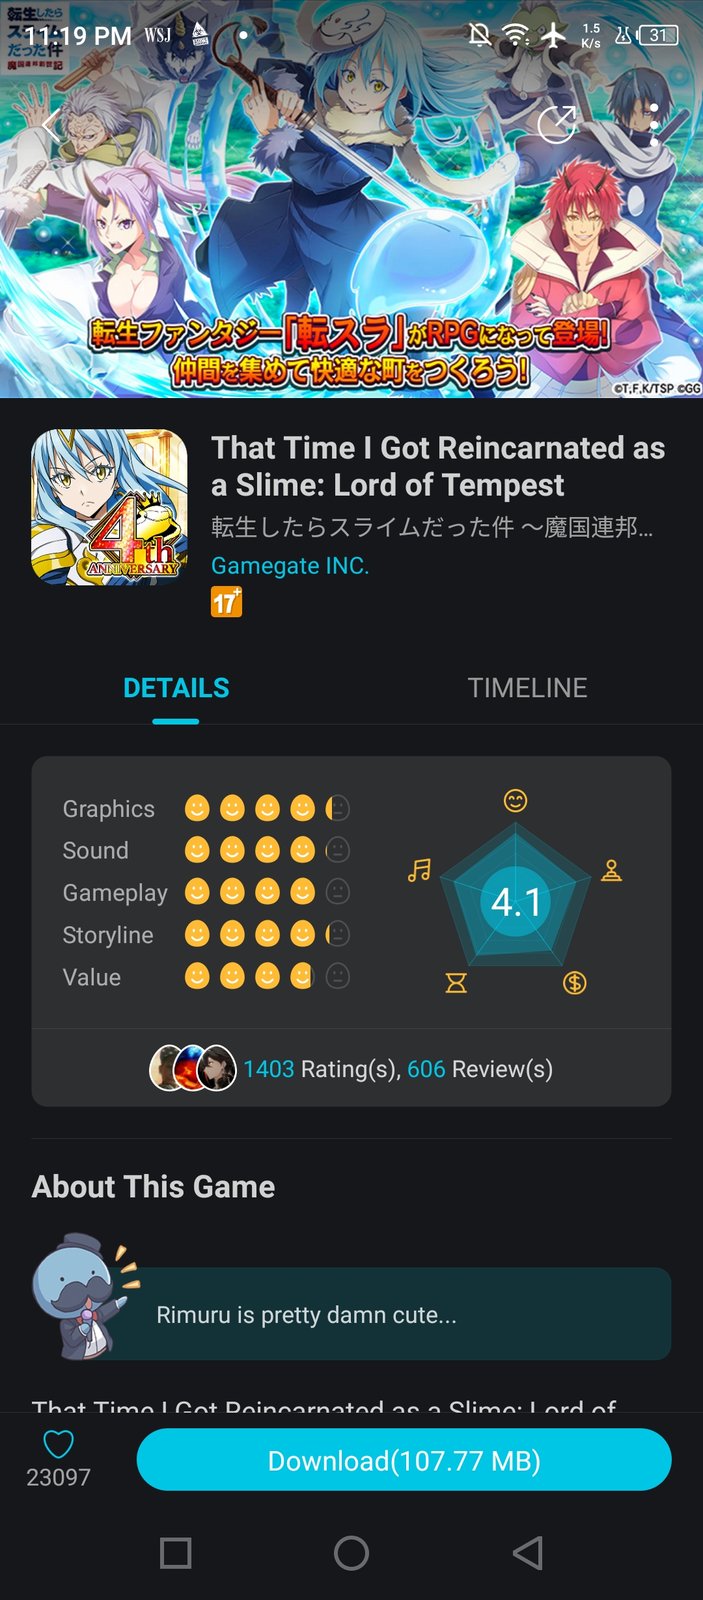 Lord of Heroes anime games Ver. 1.3.111507 MOD Menu APK